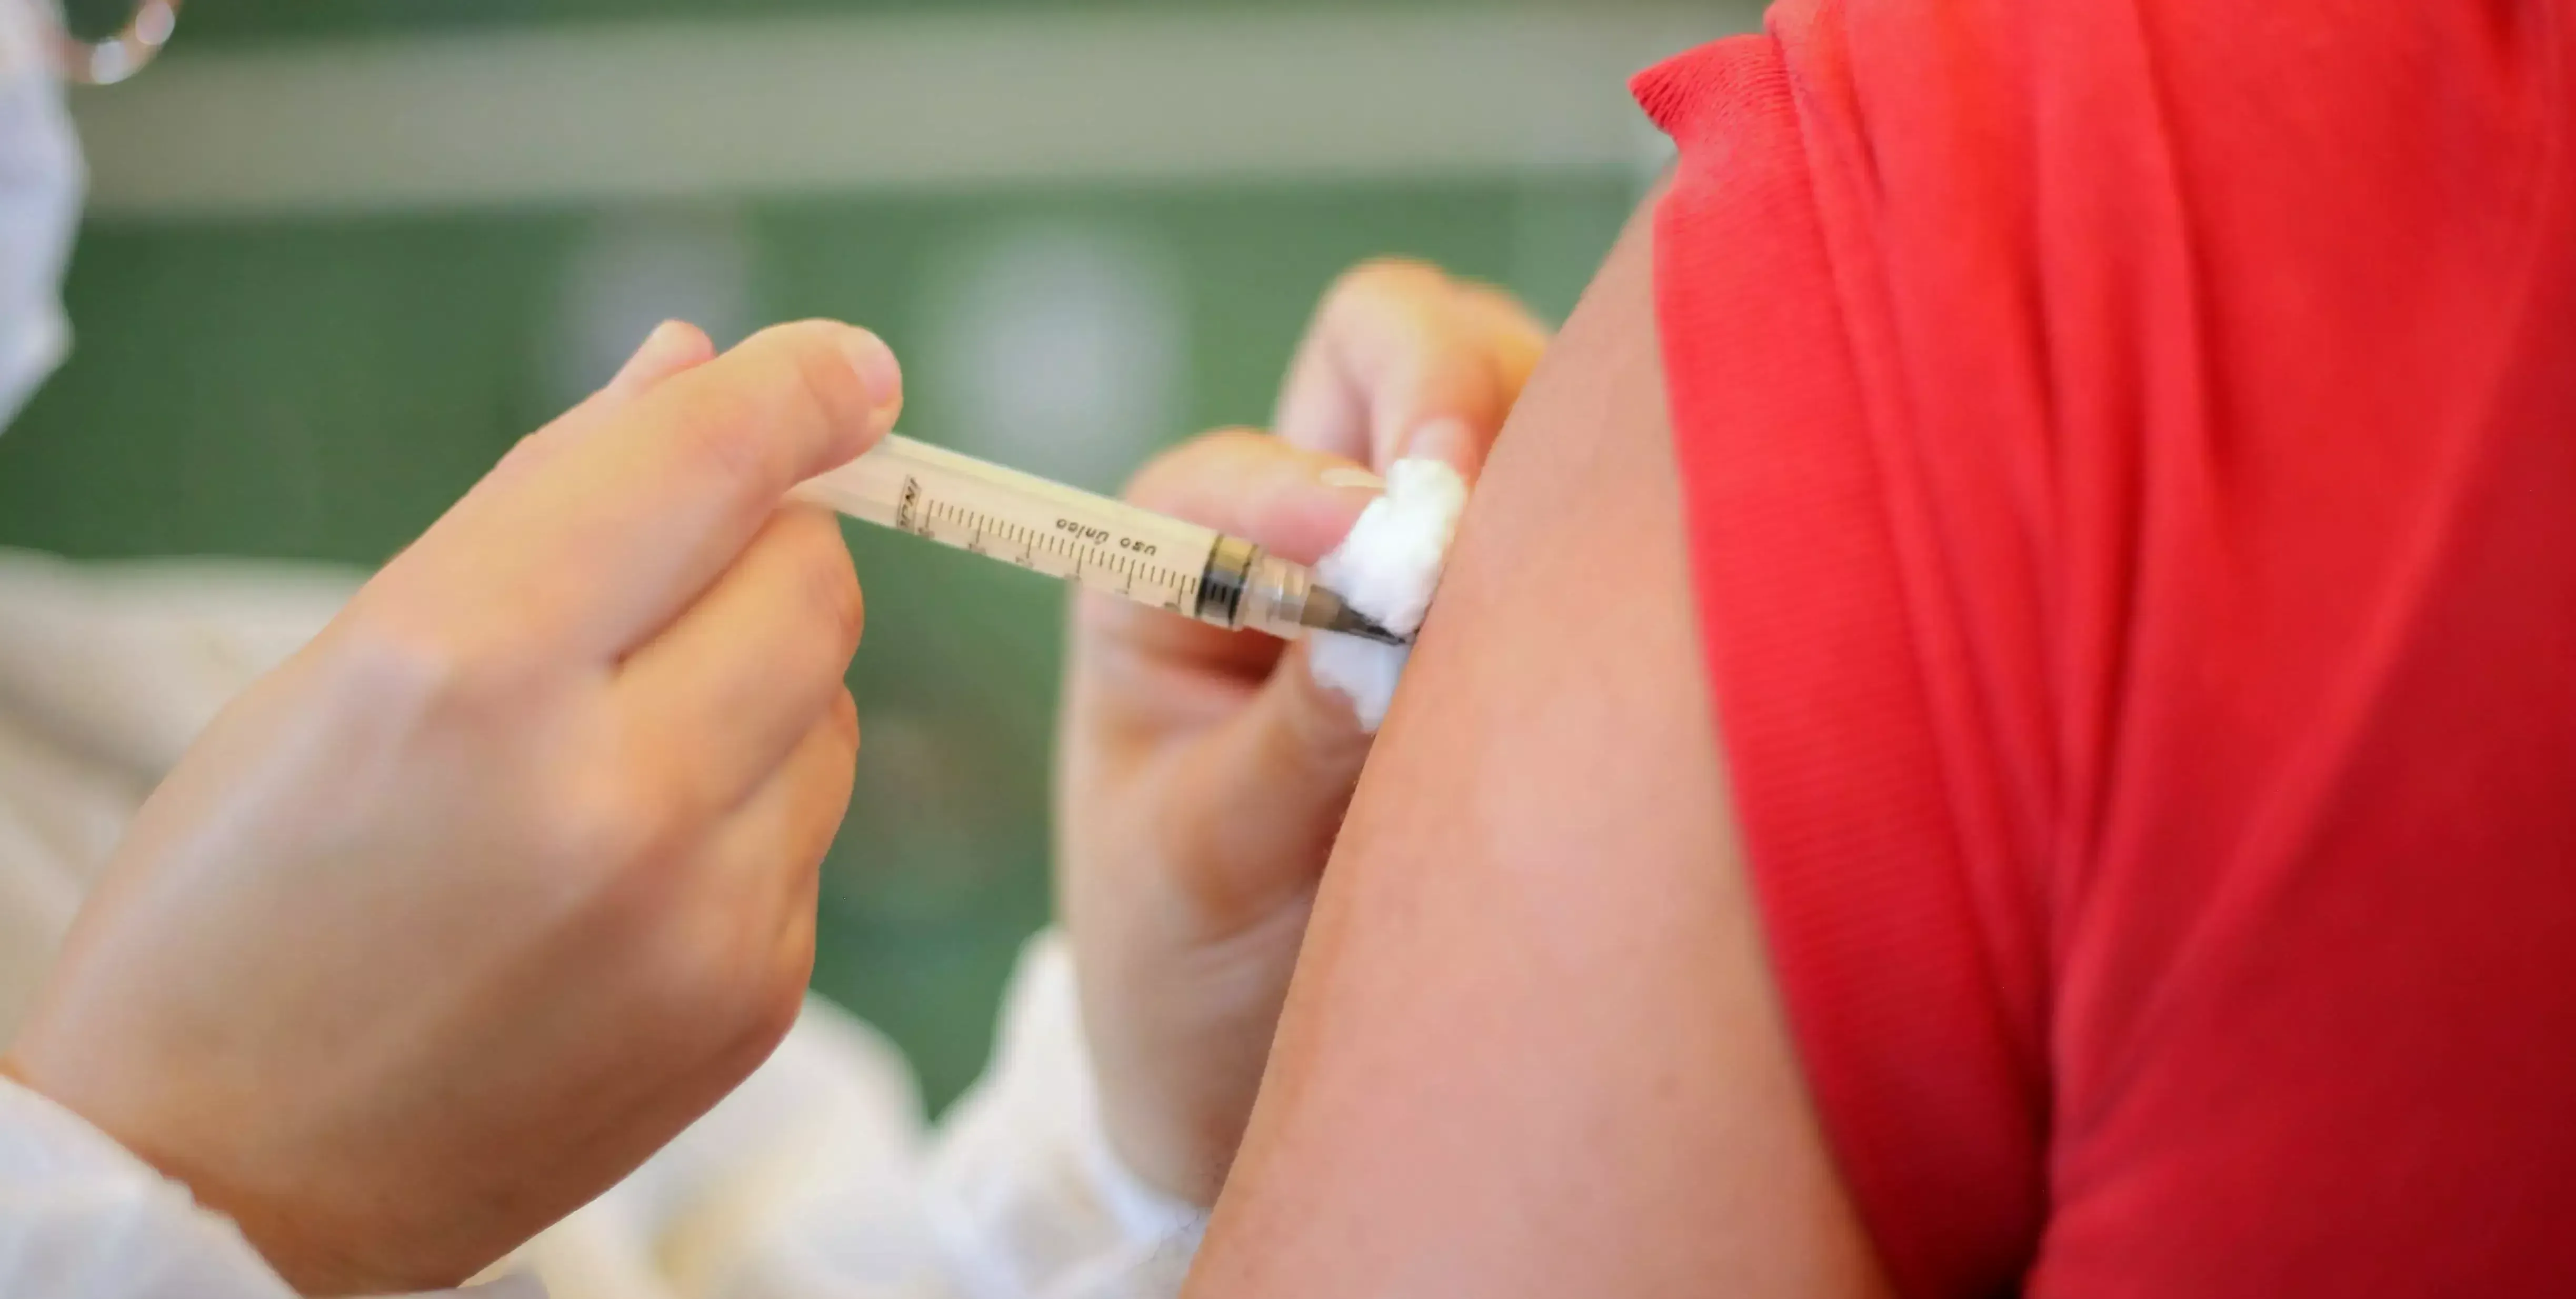  São Vicente antecipa vacinação contra covid de pessoas acima de 55 anos para sexta-feira  